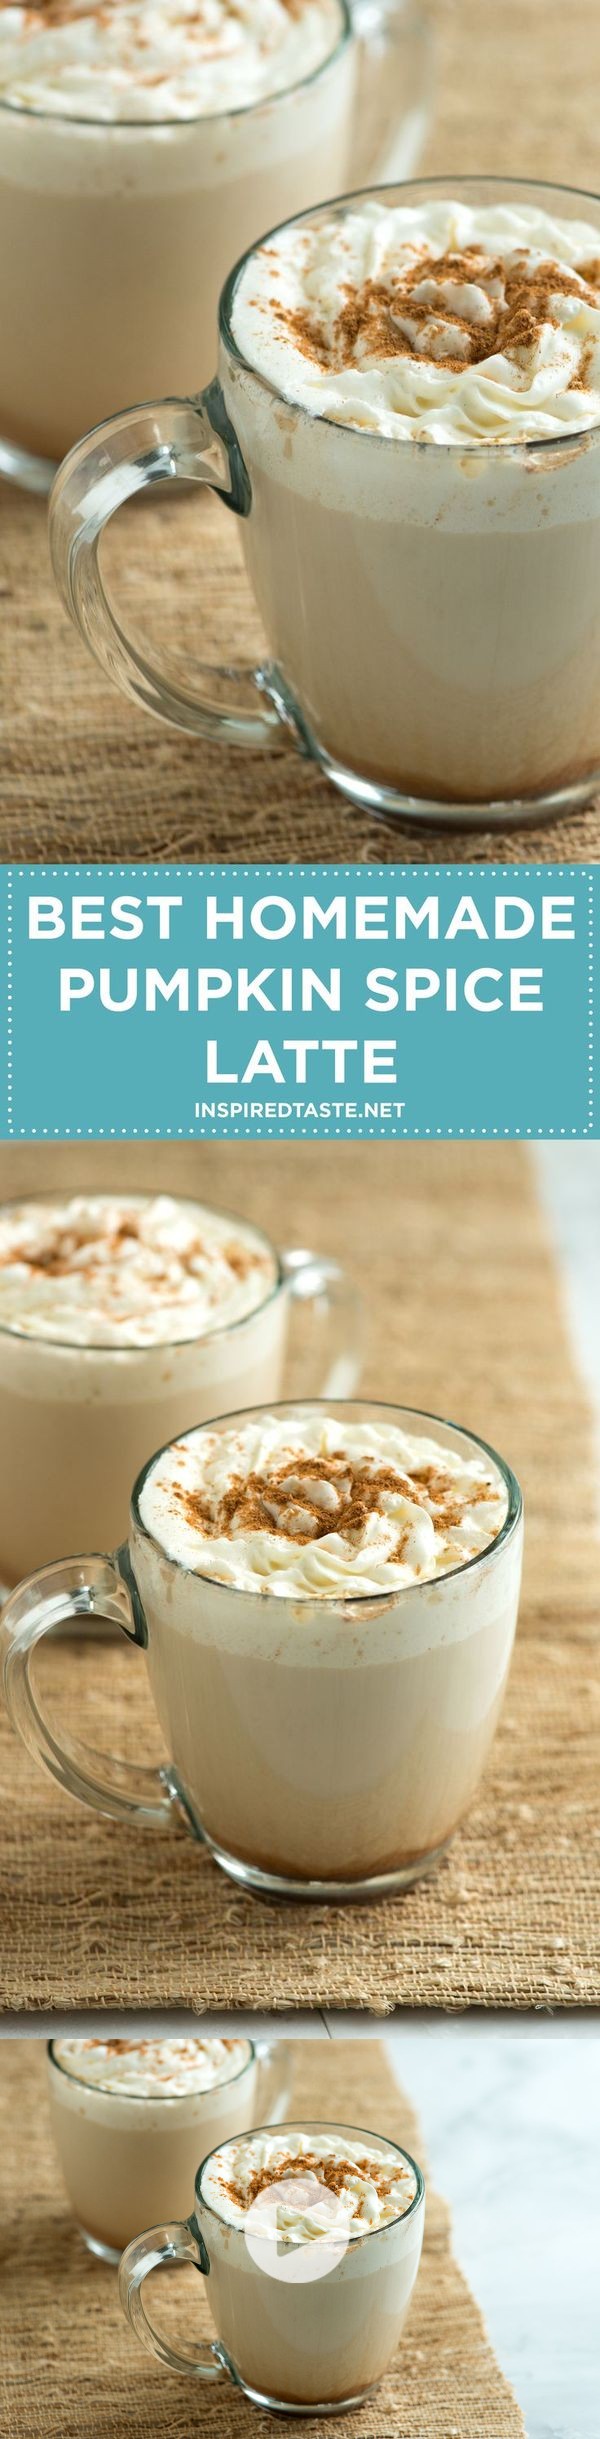 Best Homemade Pumpkin Spice Latte